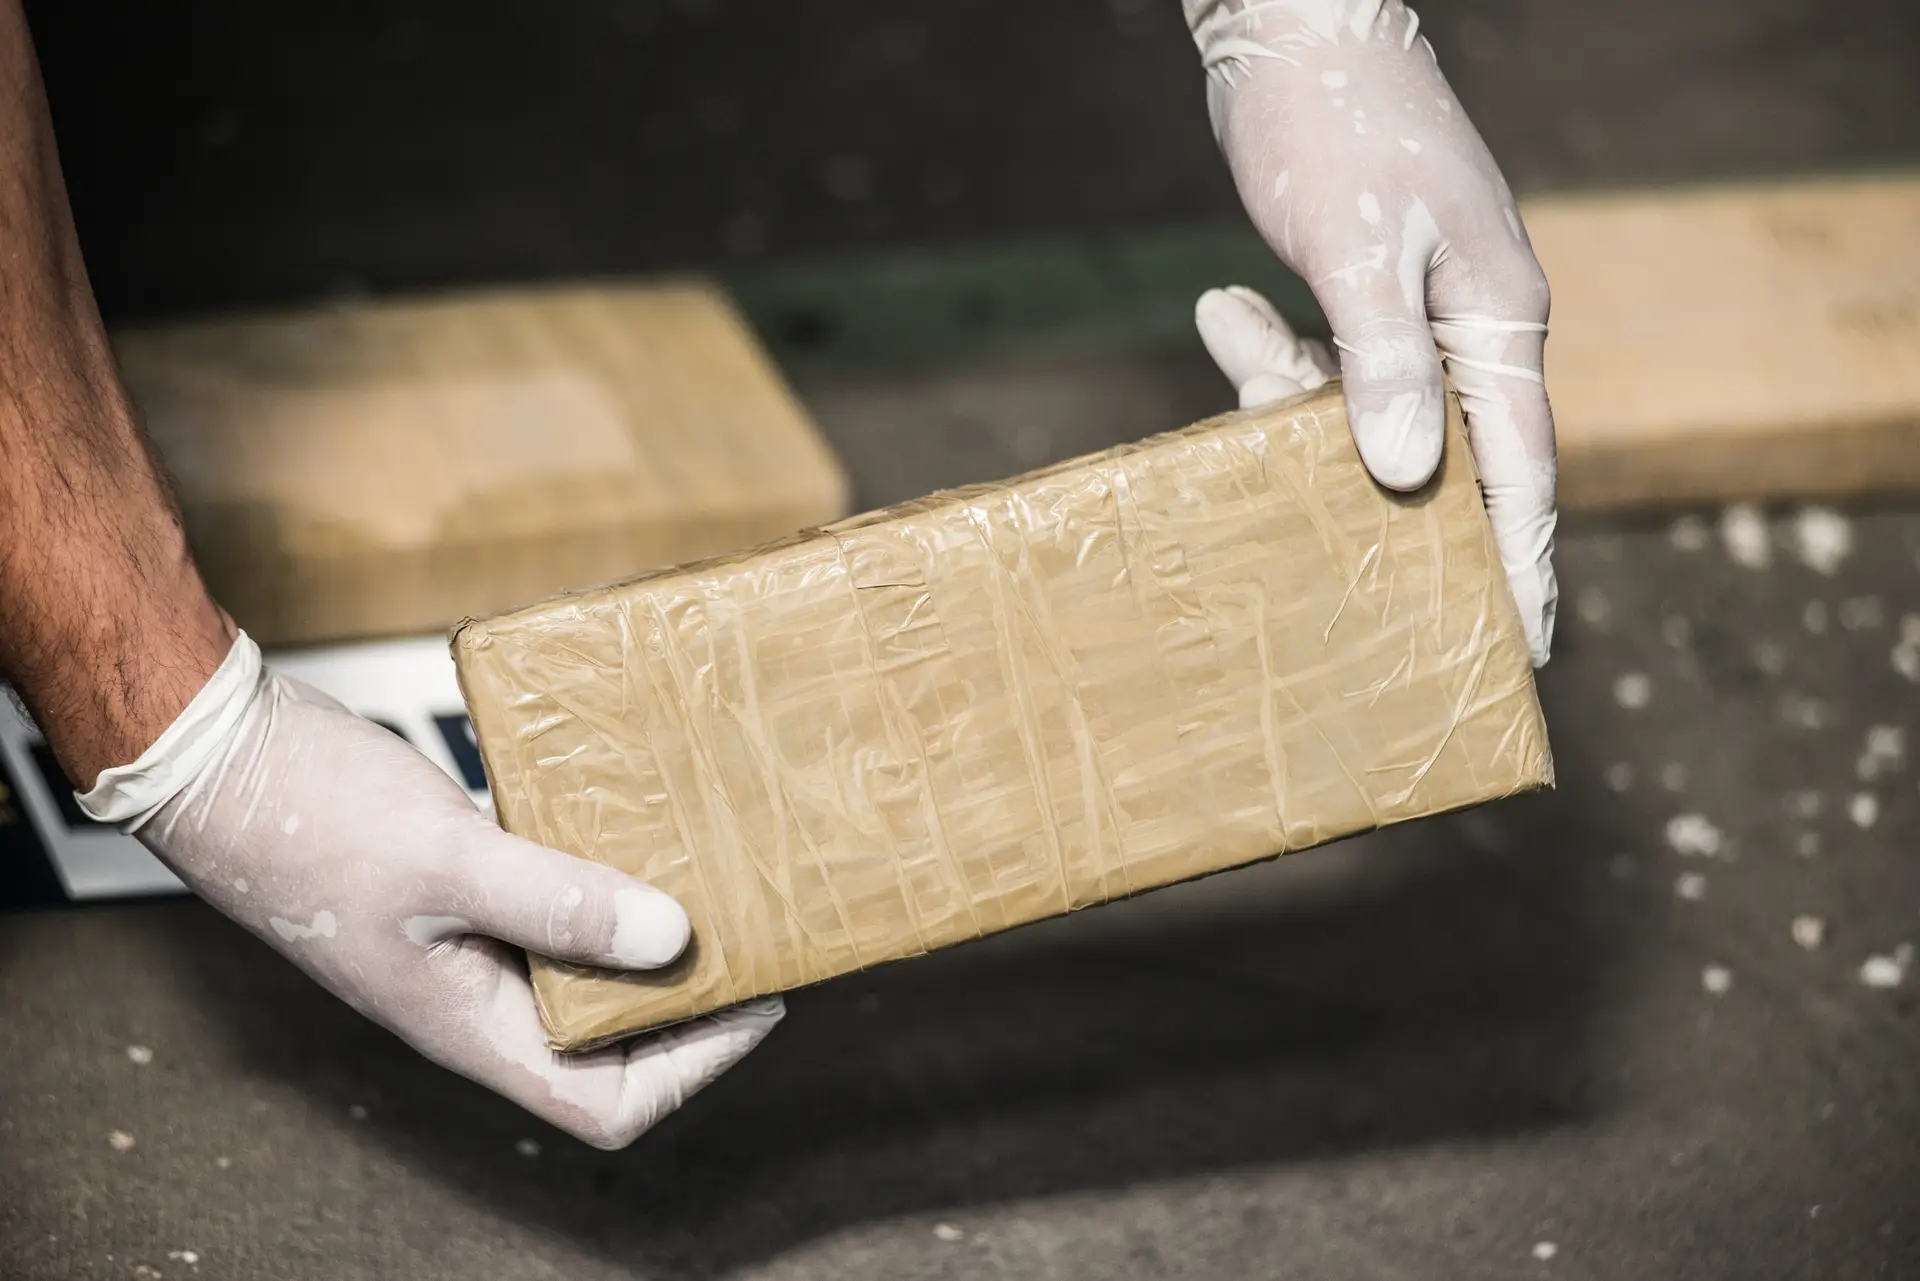 Mala com 25 quilos de cocaína encontrada no aeroporto de Lisboa